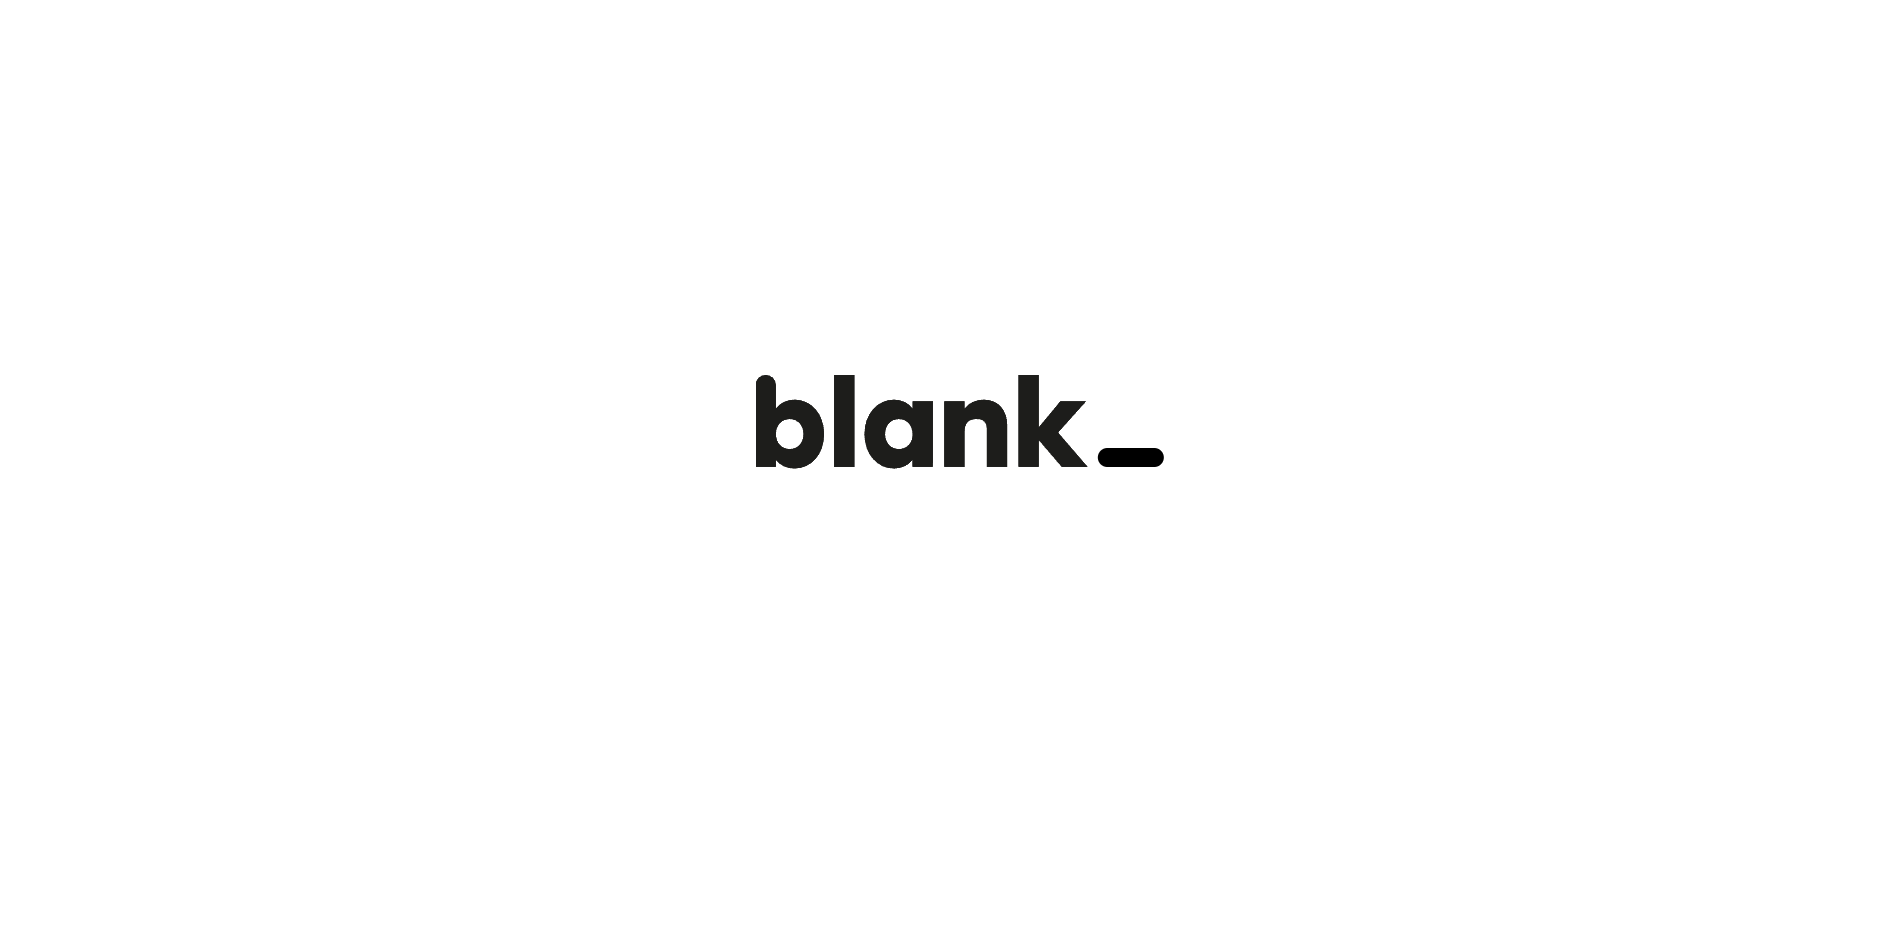 新风险投资基金 Blank Ventures 收购 Blank.com